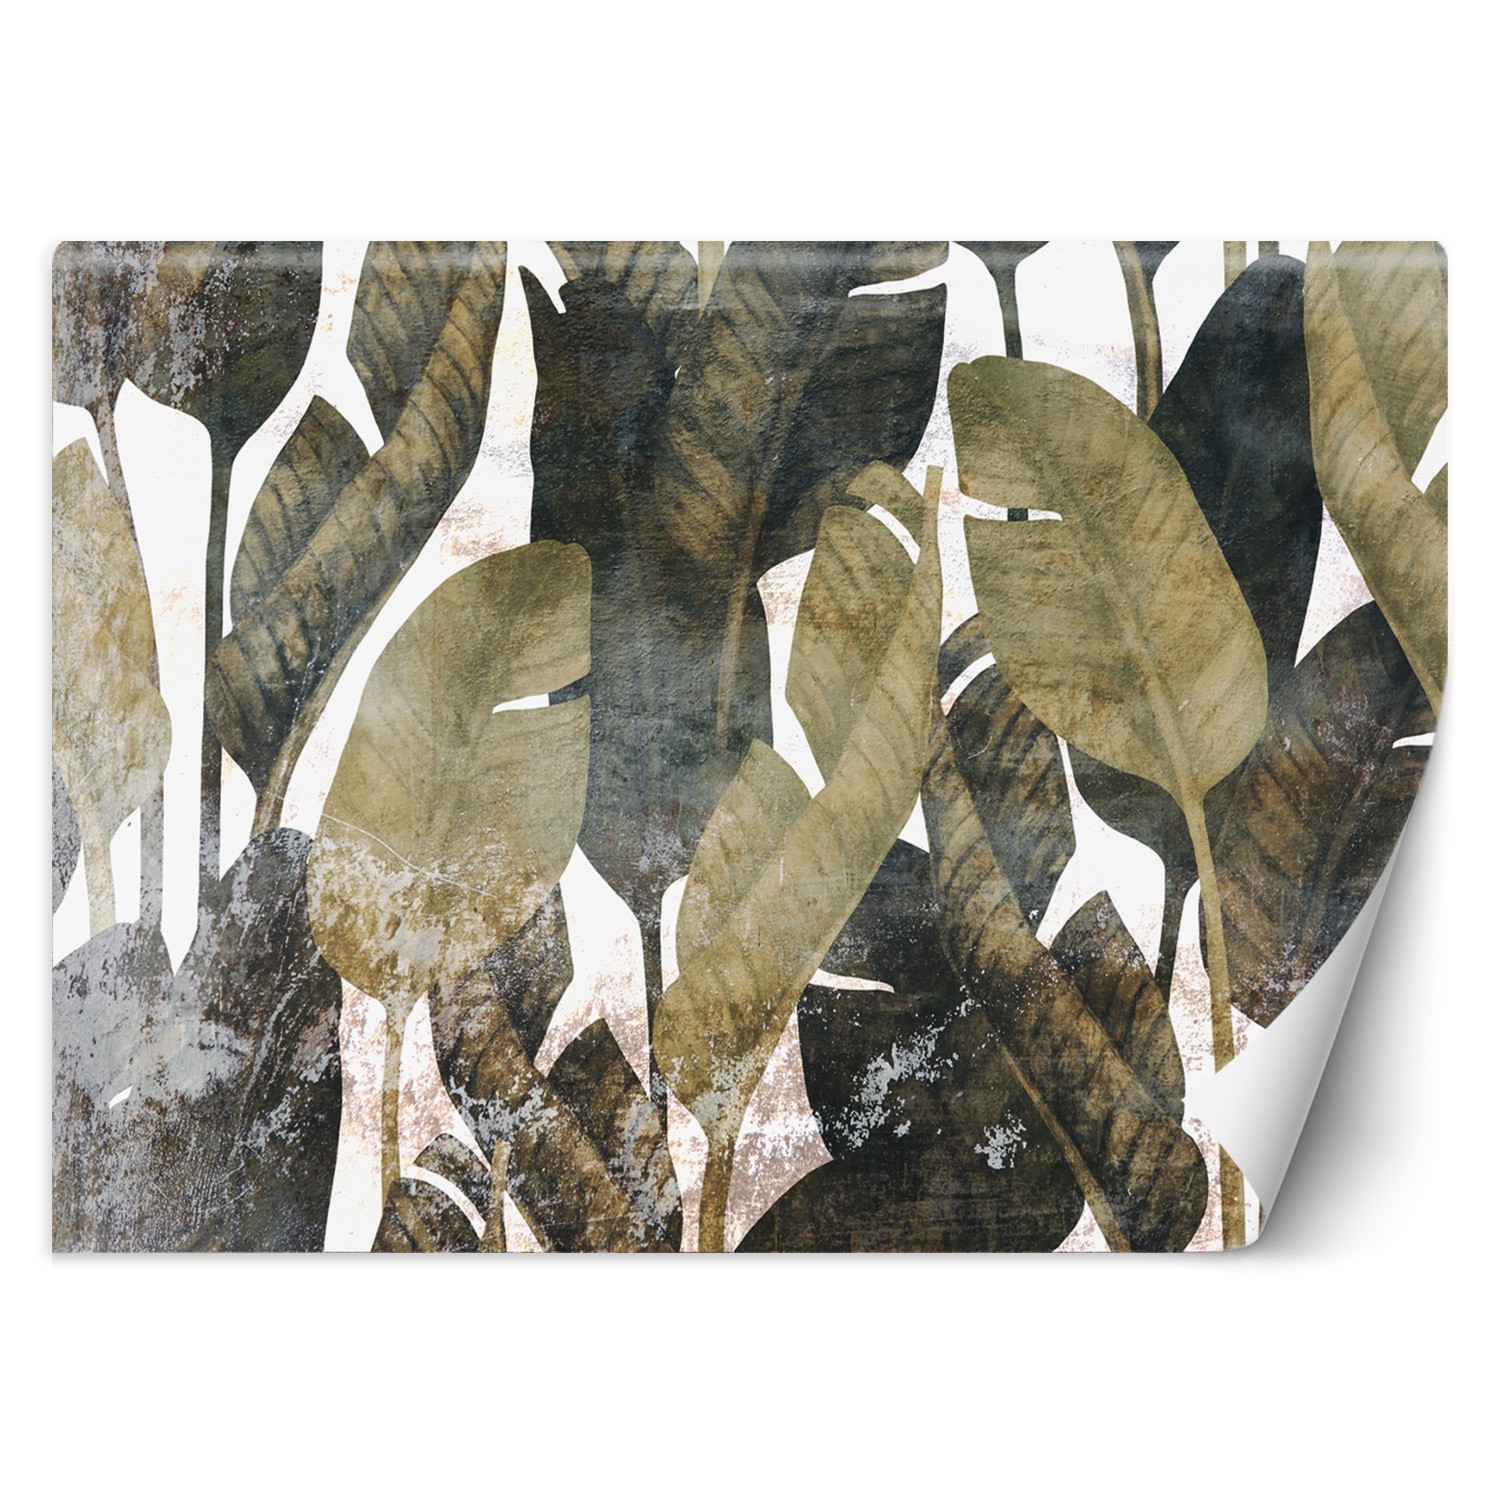 Trend24 – Behang – Bananenblaadjes – Vliesbehang – Fotobehang 3D – Behang Woonkamer – 254×184 cm – Incl. behanglijm